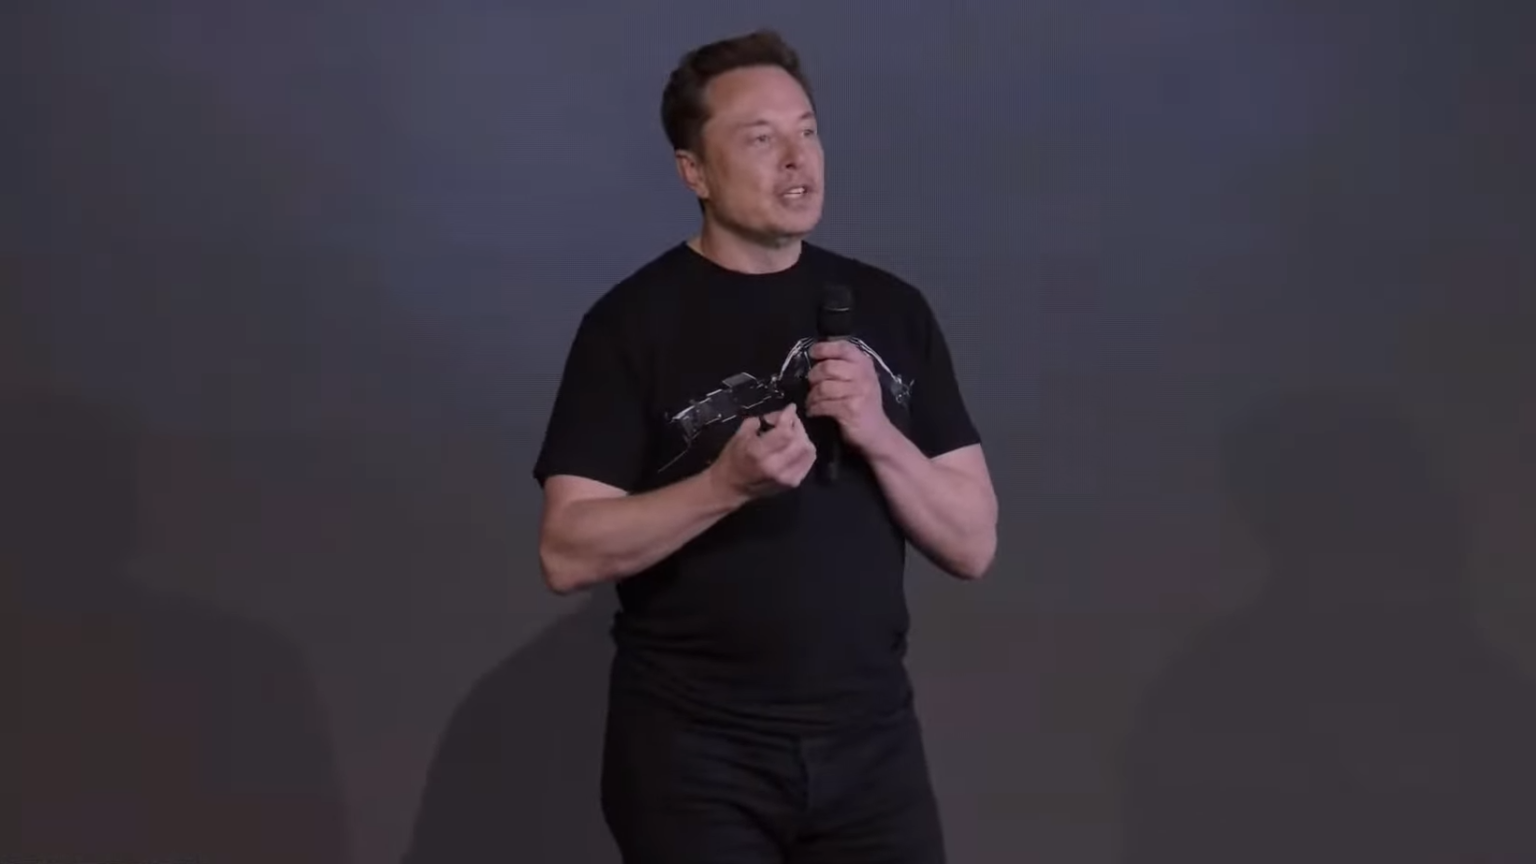 El nuevo sistema de bajo voltaje de Tesla es un "gran problema" para el cobre, dice Musk